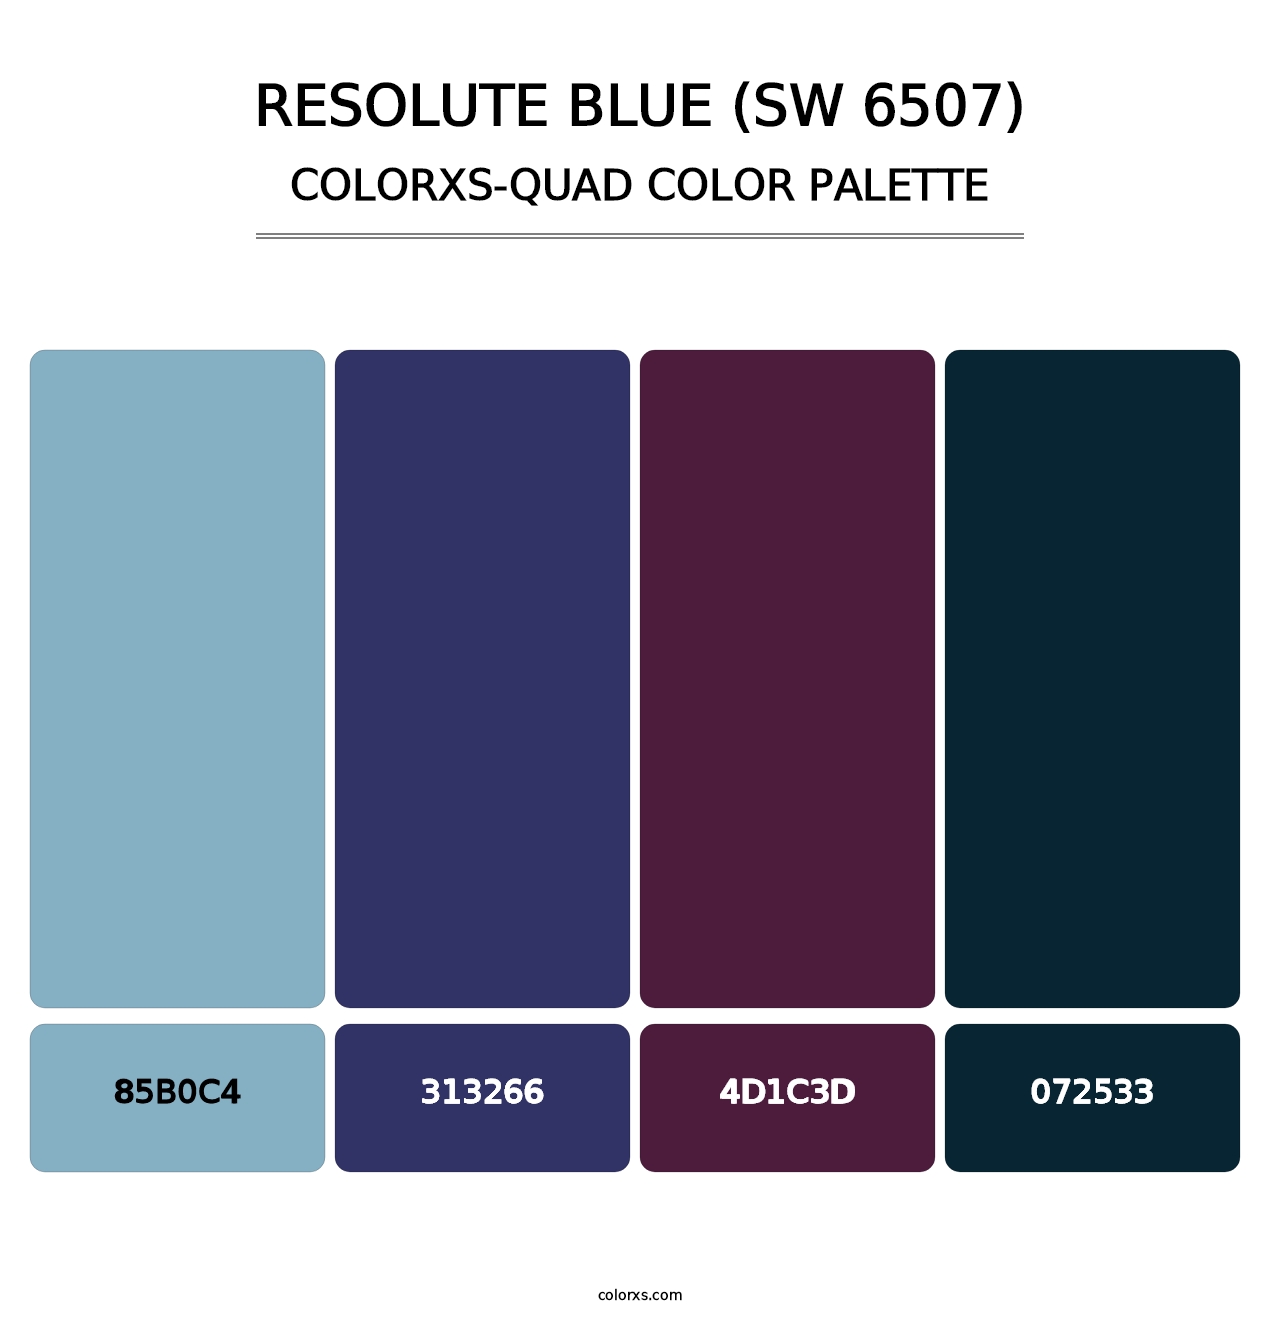 Resolute Blue (SW 6507) - Colorxs Quad Palette